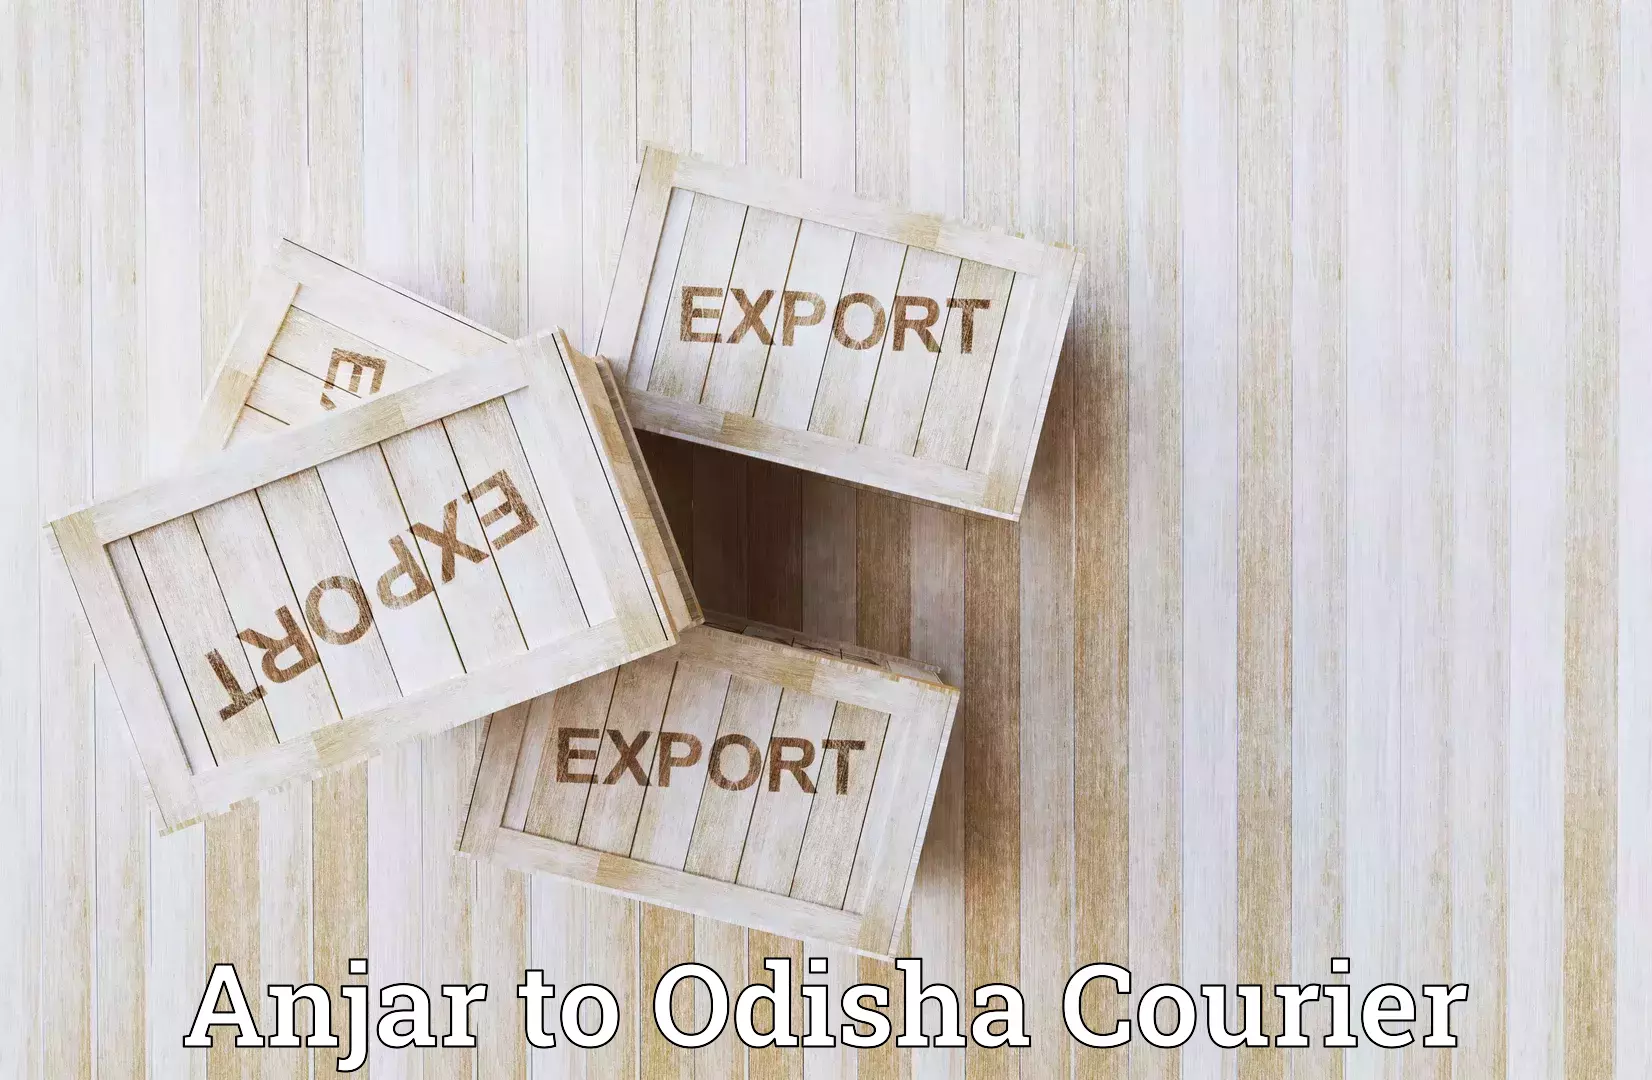 Express courier facilities Anjar to Odisha